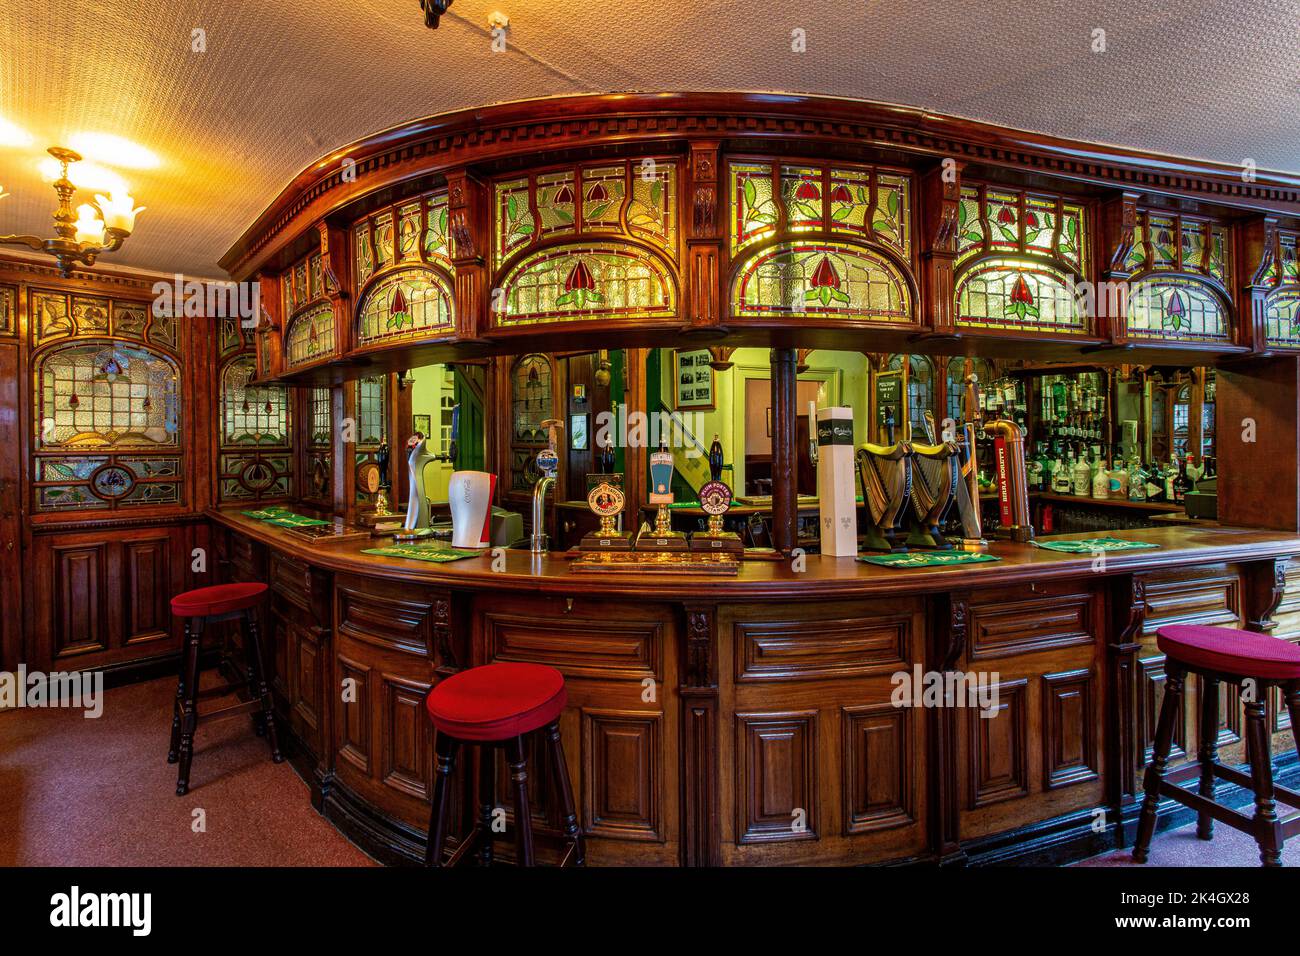 The Peveril of the Peak, pub anglais traditionnel de la ville, situé sur Great Bridgewater Street, Manchester, Royaume-Uni Banque D'Images